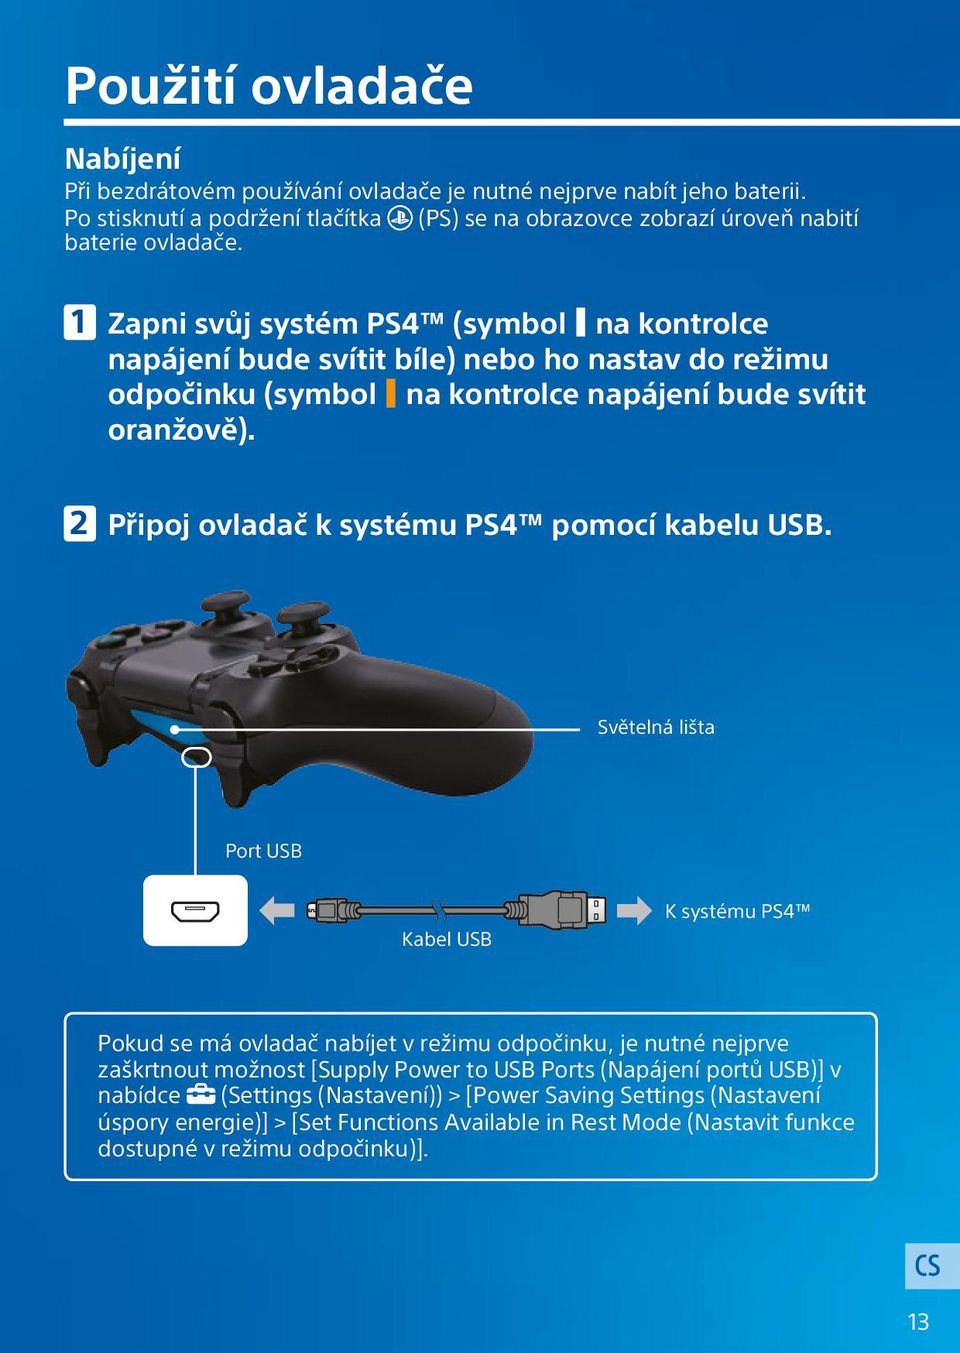 Zapni svůj systém PS4 (symbol na kontrolce napájení bude svítit bíle) nebo ho nastav do režimu odpočinku (symbol na kontrolce napájení bude svítit oranžově).